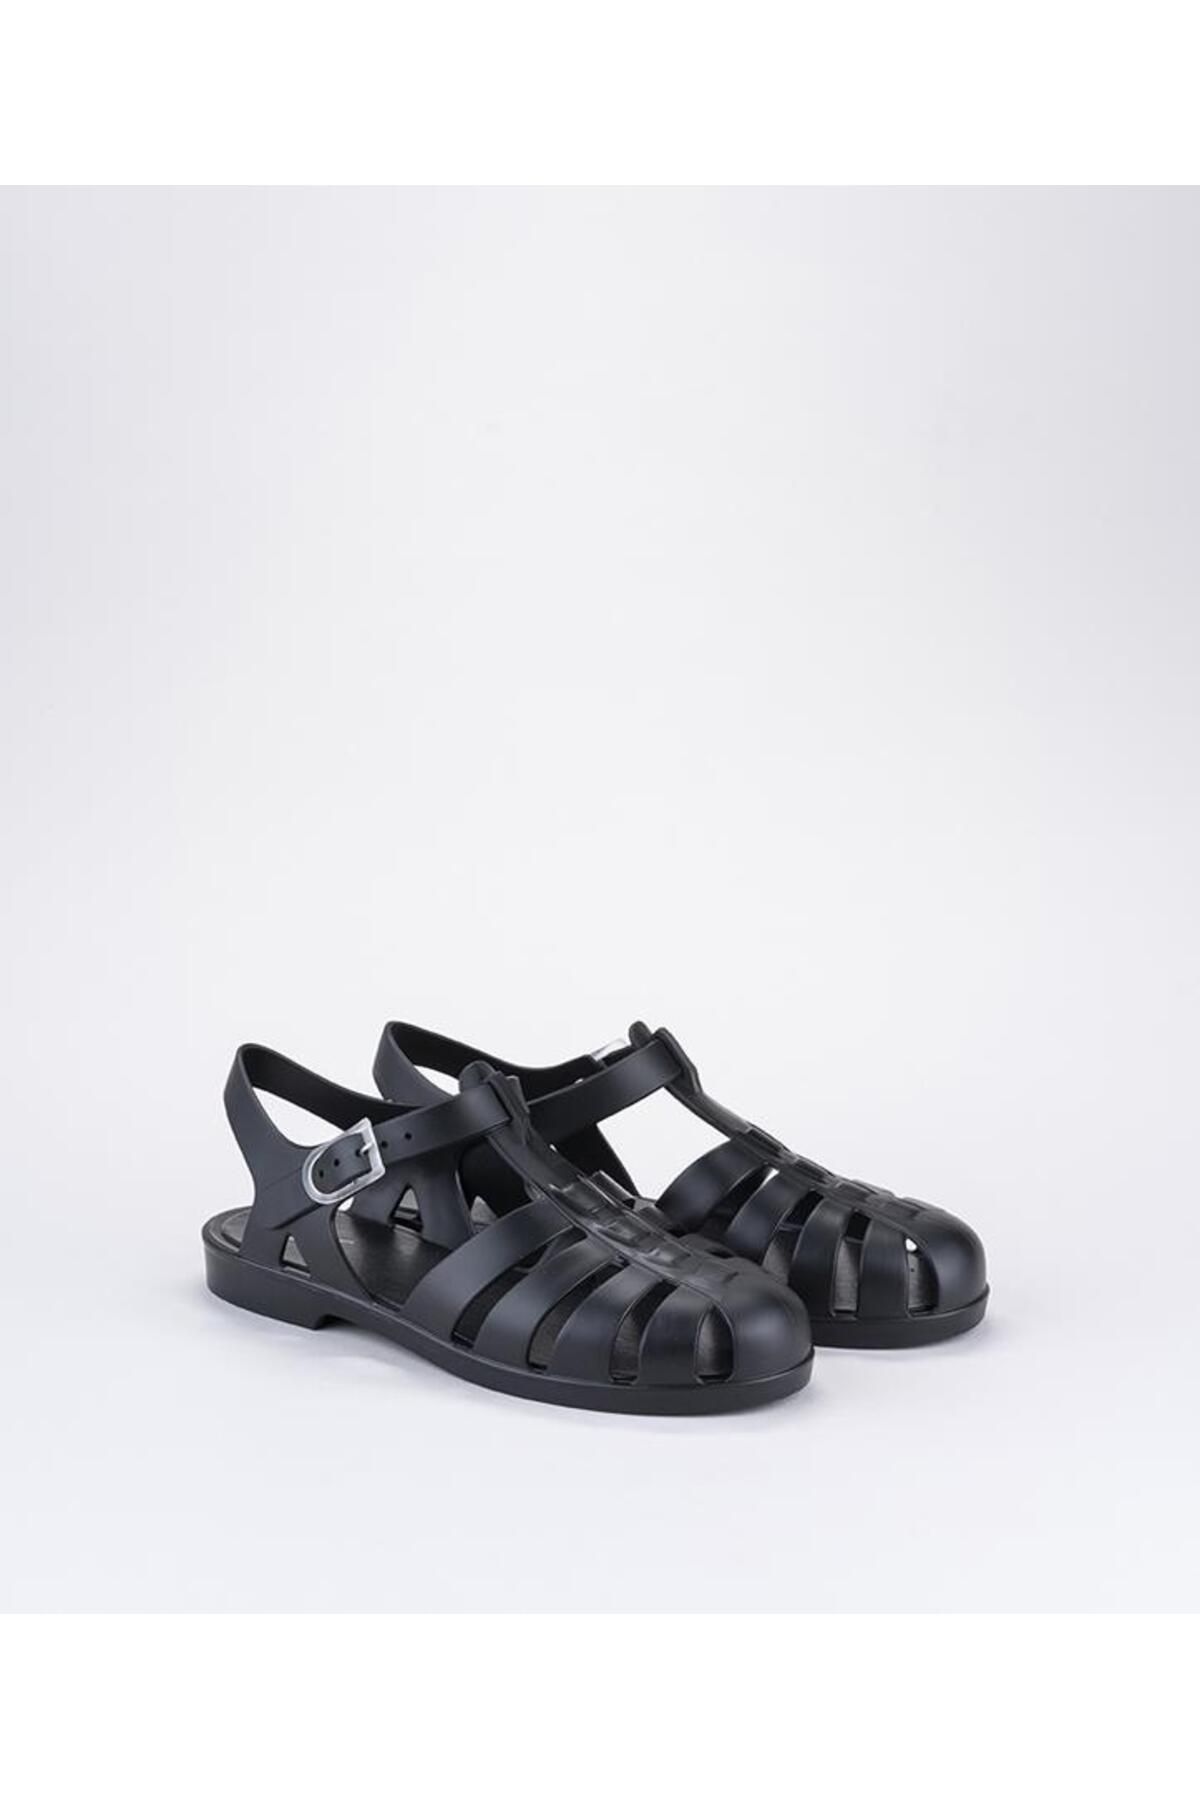 IGOR İgor S10259 Biarritz Mate Siyah Kadın Sandalet